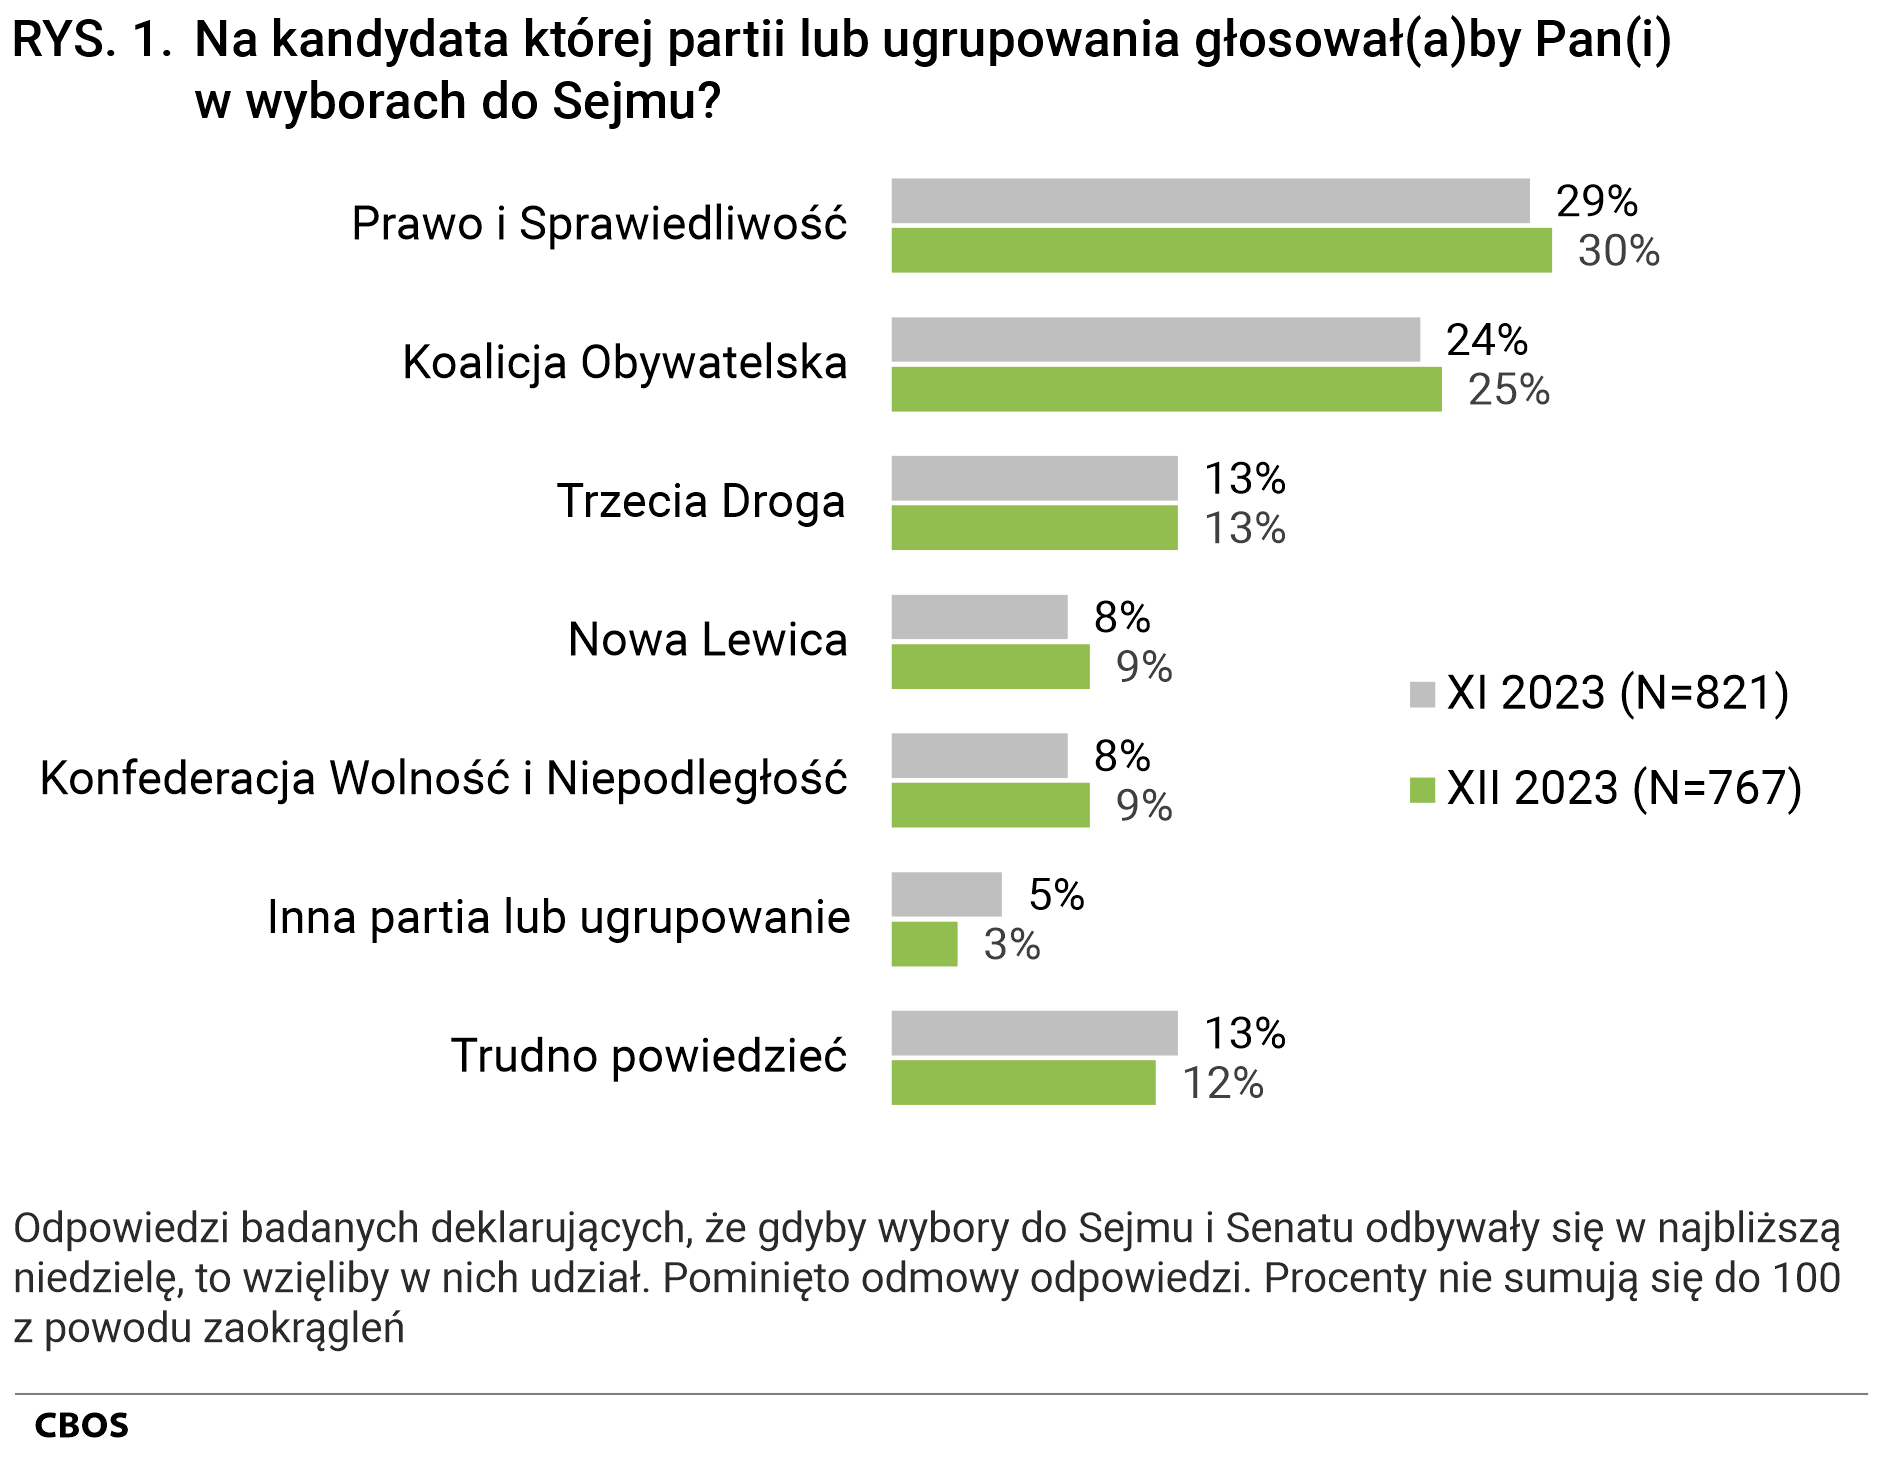 Rysunek 1 Na kandydata której partii lub ugrupowania głosowałby Pan(głosowałaby Pani) w wyborach do Sejmu? Odpowiedzi badanych deklarujących, że gdyby wybory do Sejmu i Senatu odbywały się w najbliższą niedzielę, to wzięliby w nich udział, według terminów badań. Pominięto odmowy odpowiedzi. Listopad 2023 (N=821) - Prawo i Sprawiedliwość (29%), Koalicja Obywatelska (24%), Trzecia Droga (13%), Nowa Lewica (8%), Konfederacja Wolność i Niepodległość (8%), Inna partia lub ugrupowanie (5%), Trudno powiedzieć (13%). Grudzień 2023 (N=767) - Prawo i Sprawiedliwość (30%), Koalicja Obywatelska (25%), Trzecia Droga (13%), Nowa Lewica (9%), Konfederacja Wolność i Niepodległość (9%), Inna partia lub ugrupowanie (3%), Trudno powiedzieć (12%). Procenty nie sumują się do 100 z powodu zaokrągleń